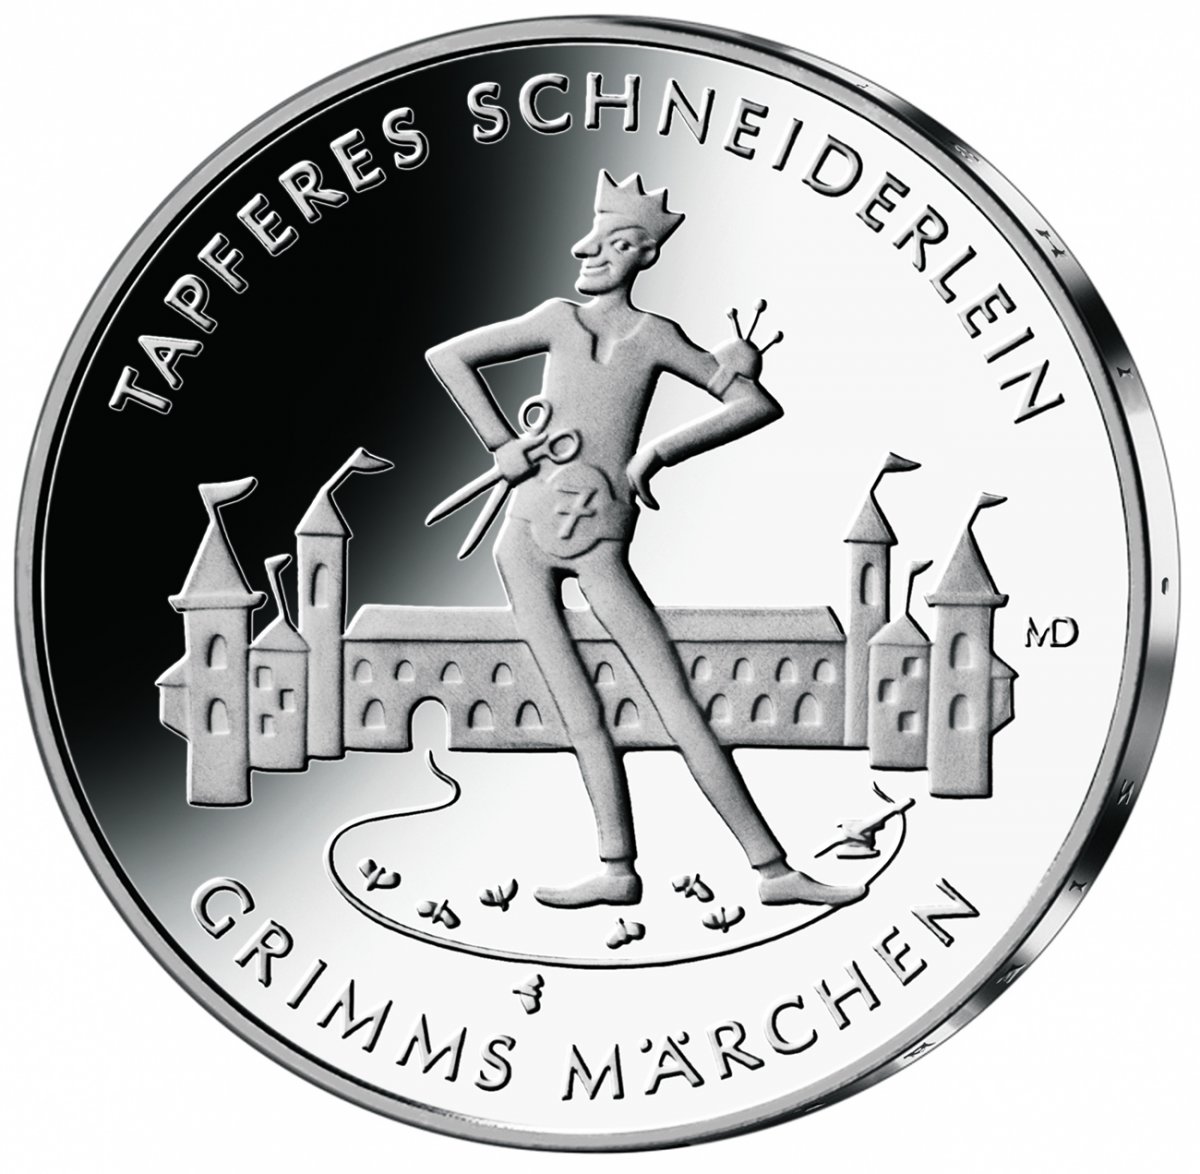 20 euro collector coin 2019 "Tapferes Schneiderlein" 